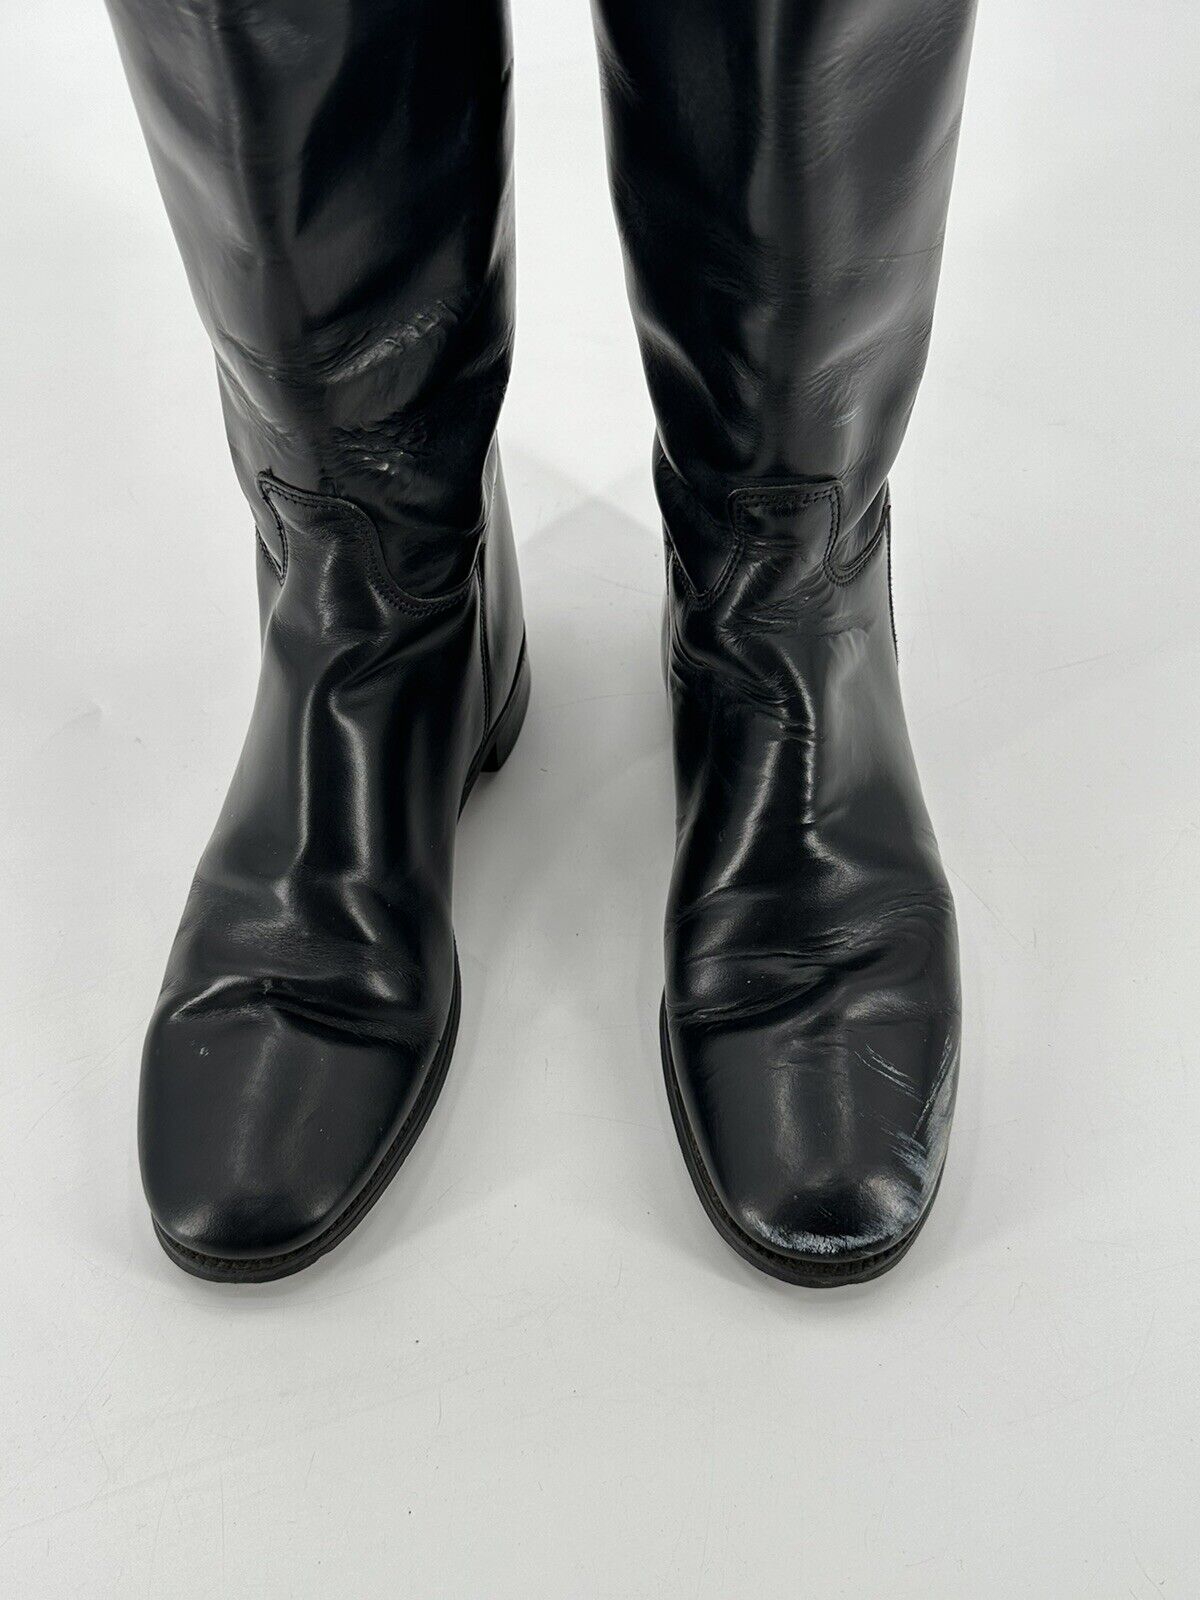 Marlborough Women's UK 6 / US 8 Black Leather Eng… - image 3